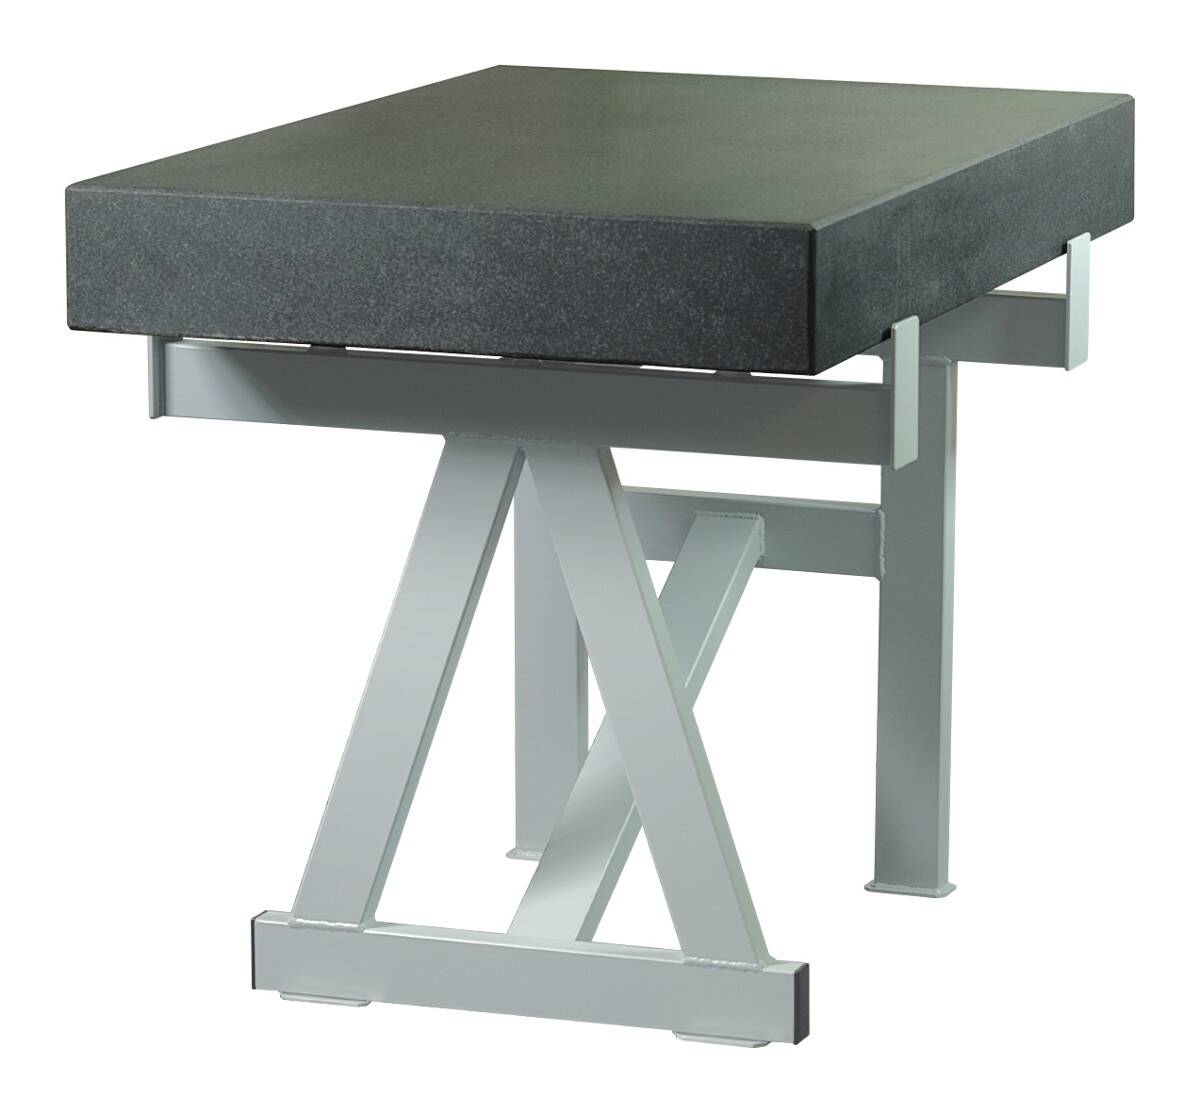 SCHUT stół do płyty pomiarowej 900x600x100mm 131.013